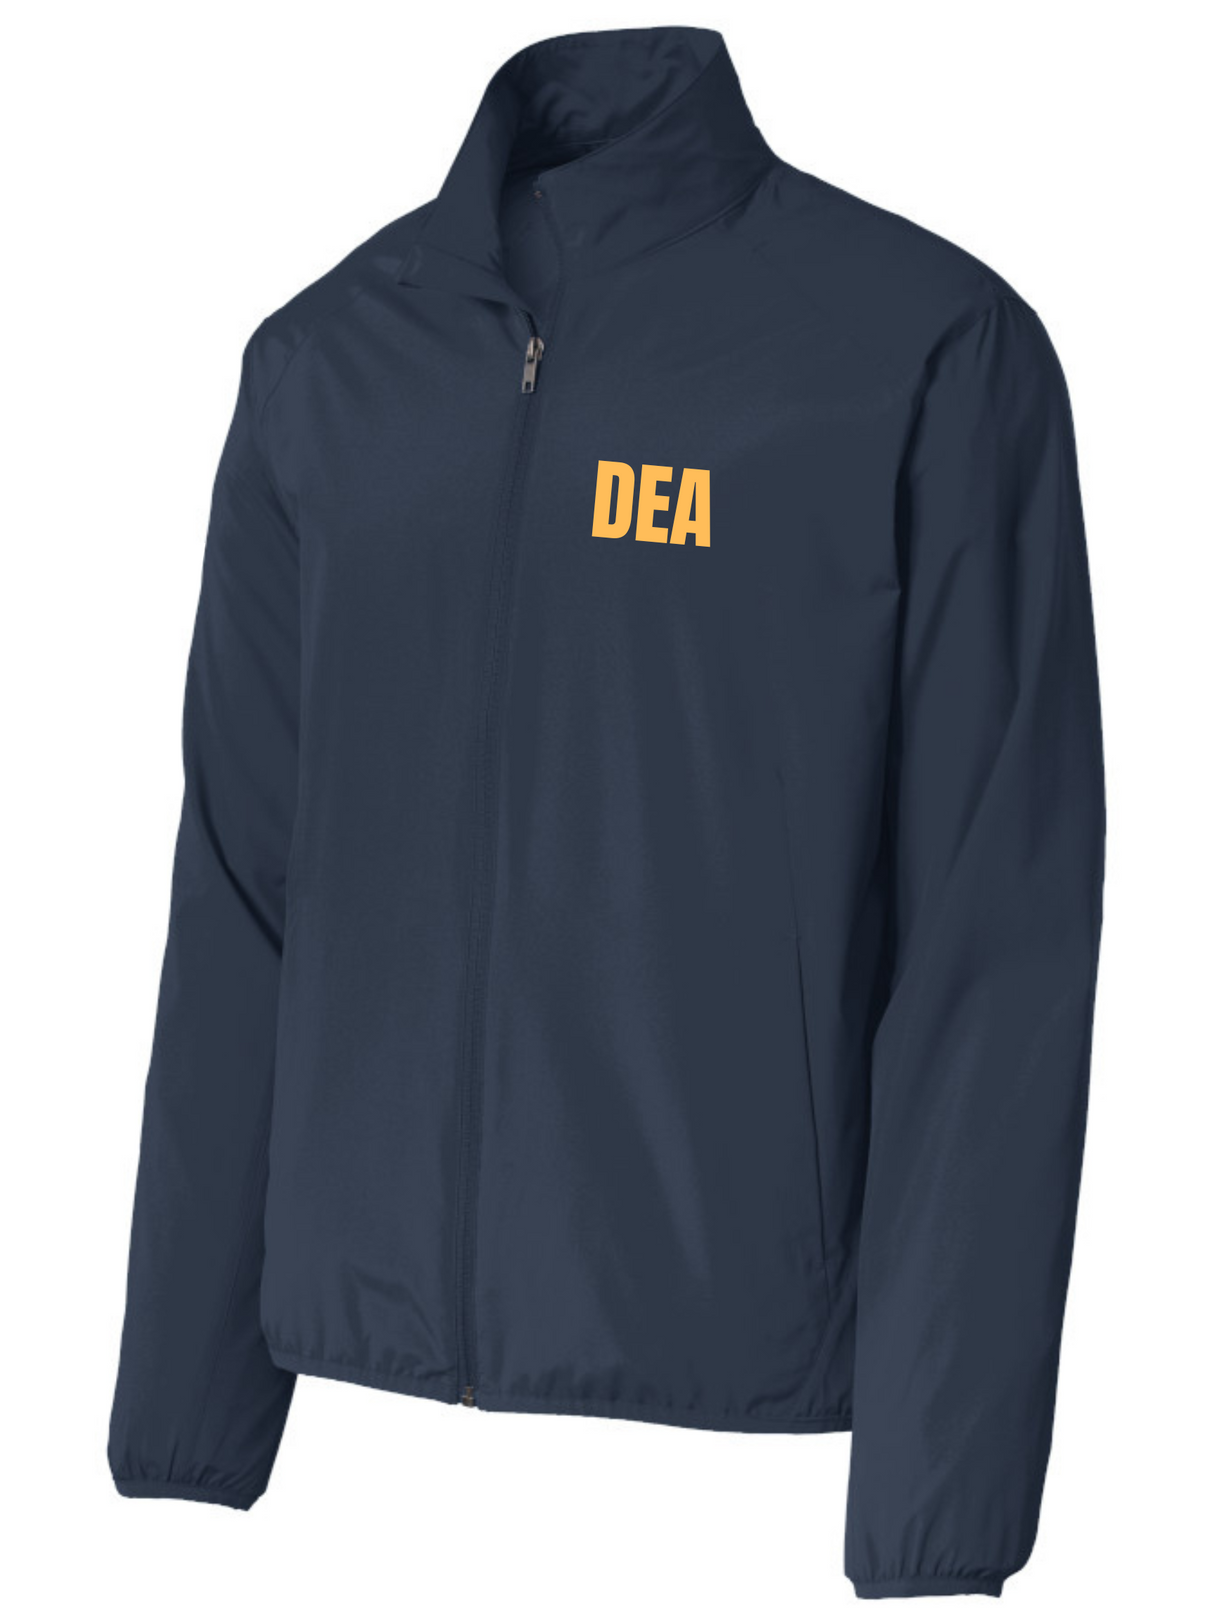 DEA Federal Agent- Agency Identifier Jacket - FEDS Apparel